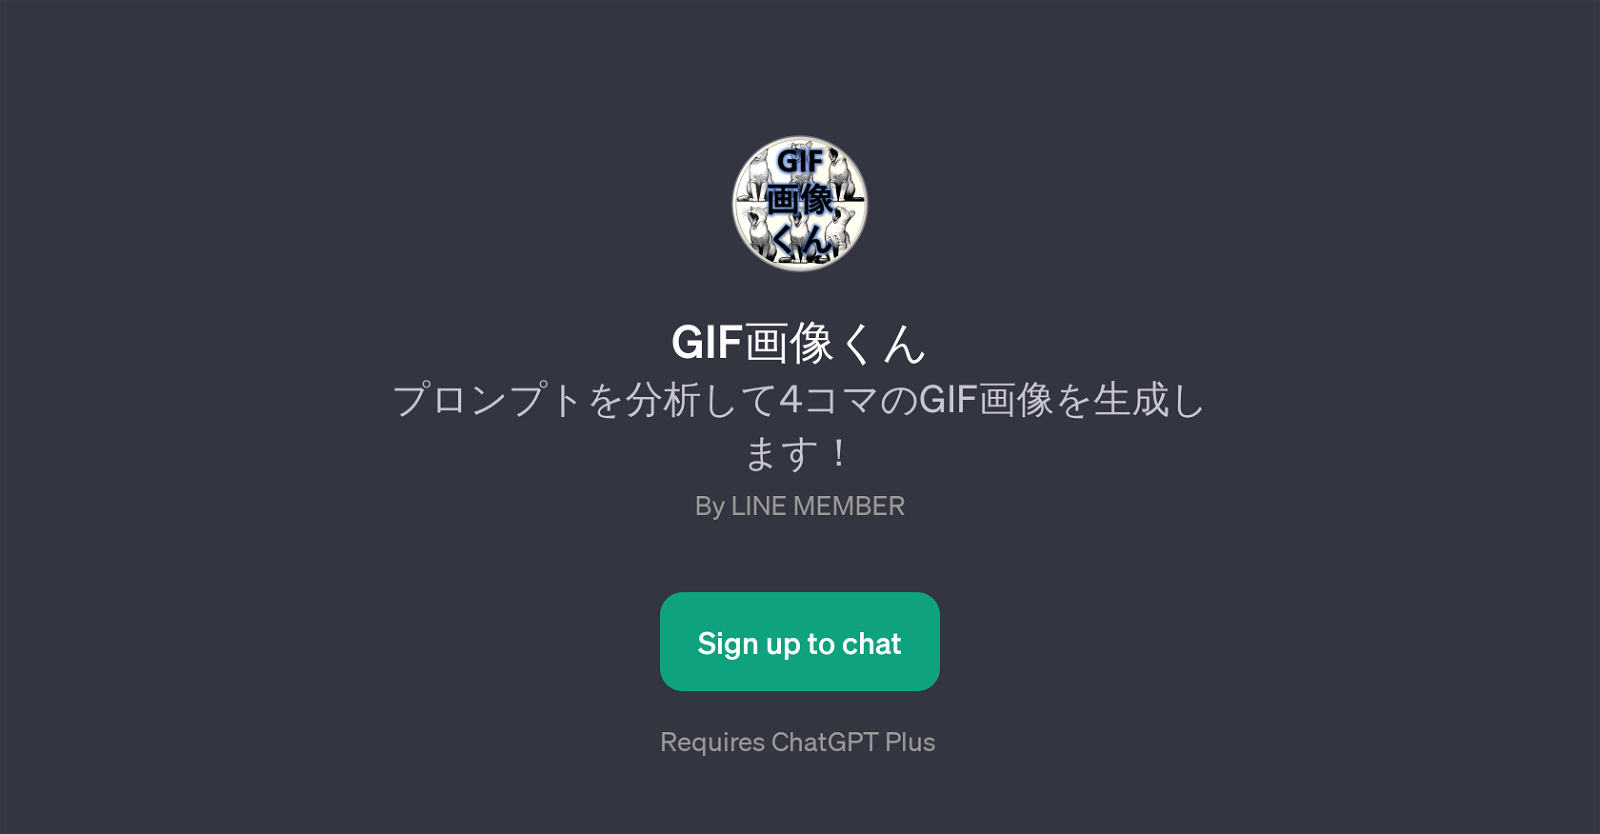 GIF website